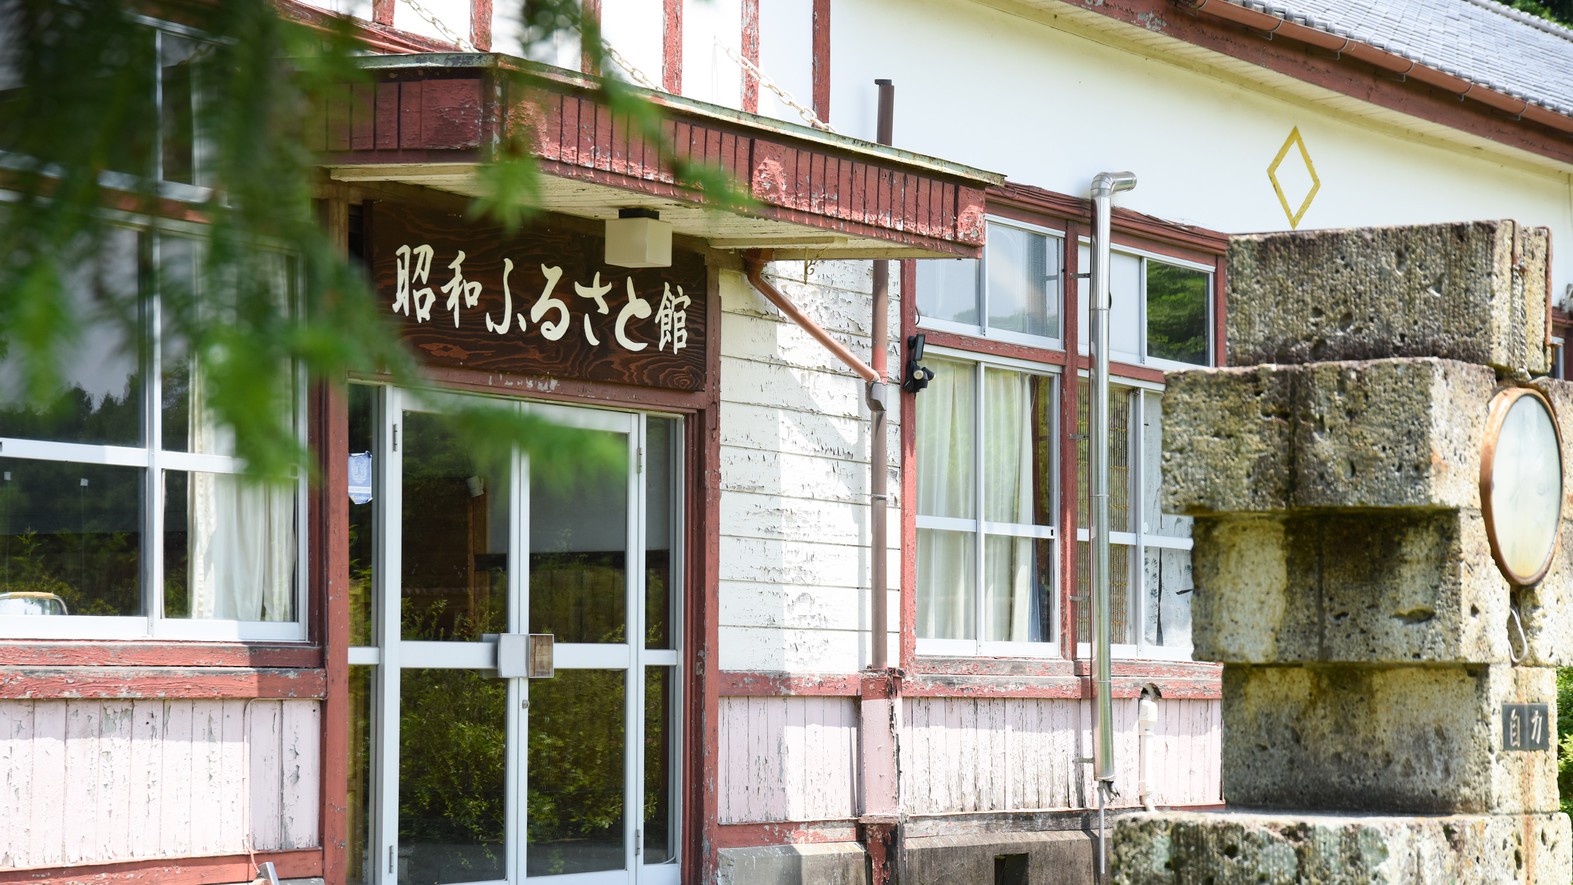 *昭和ふるさと館/旧学校の校舎を改装した建物、古きよき日本の学び舎がそのままに